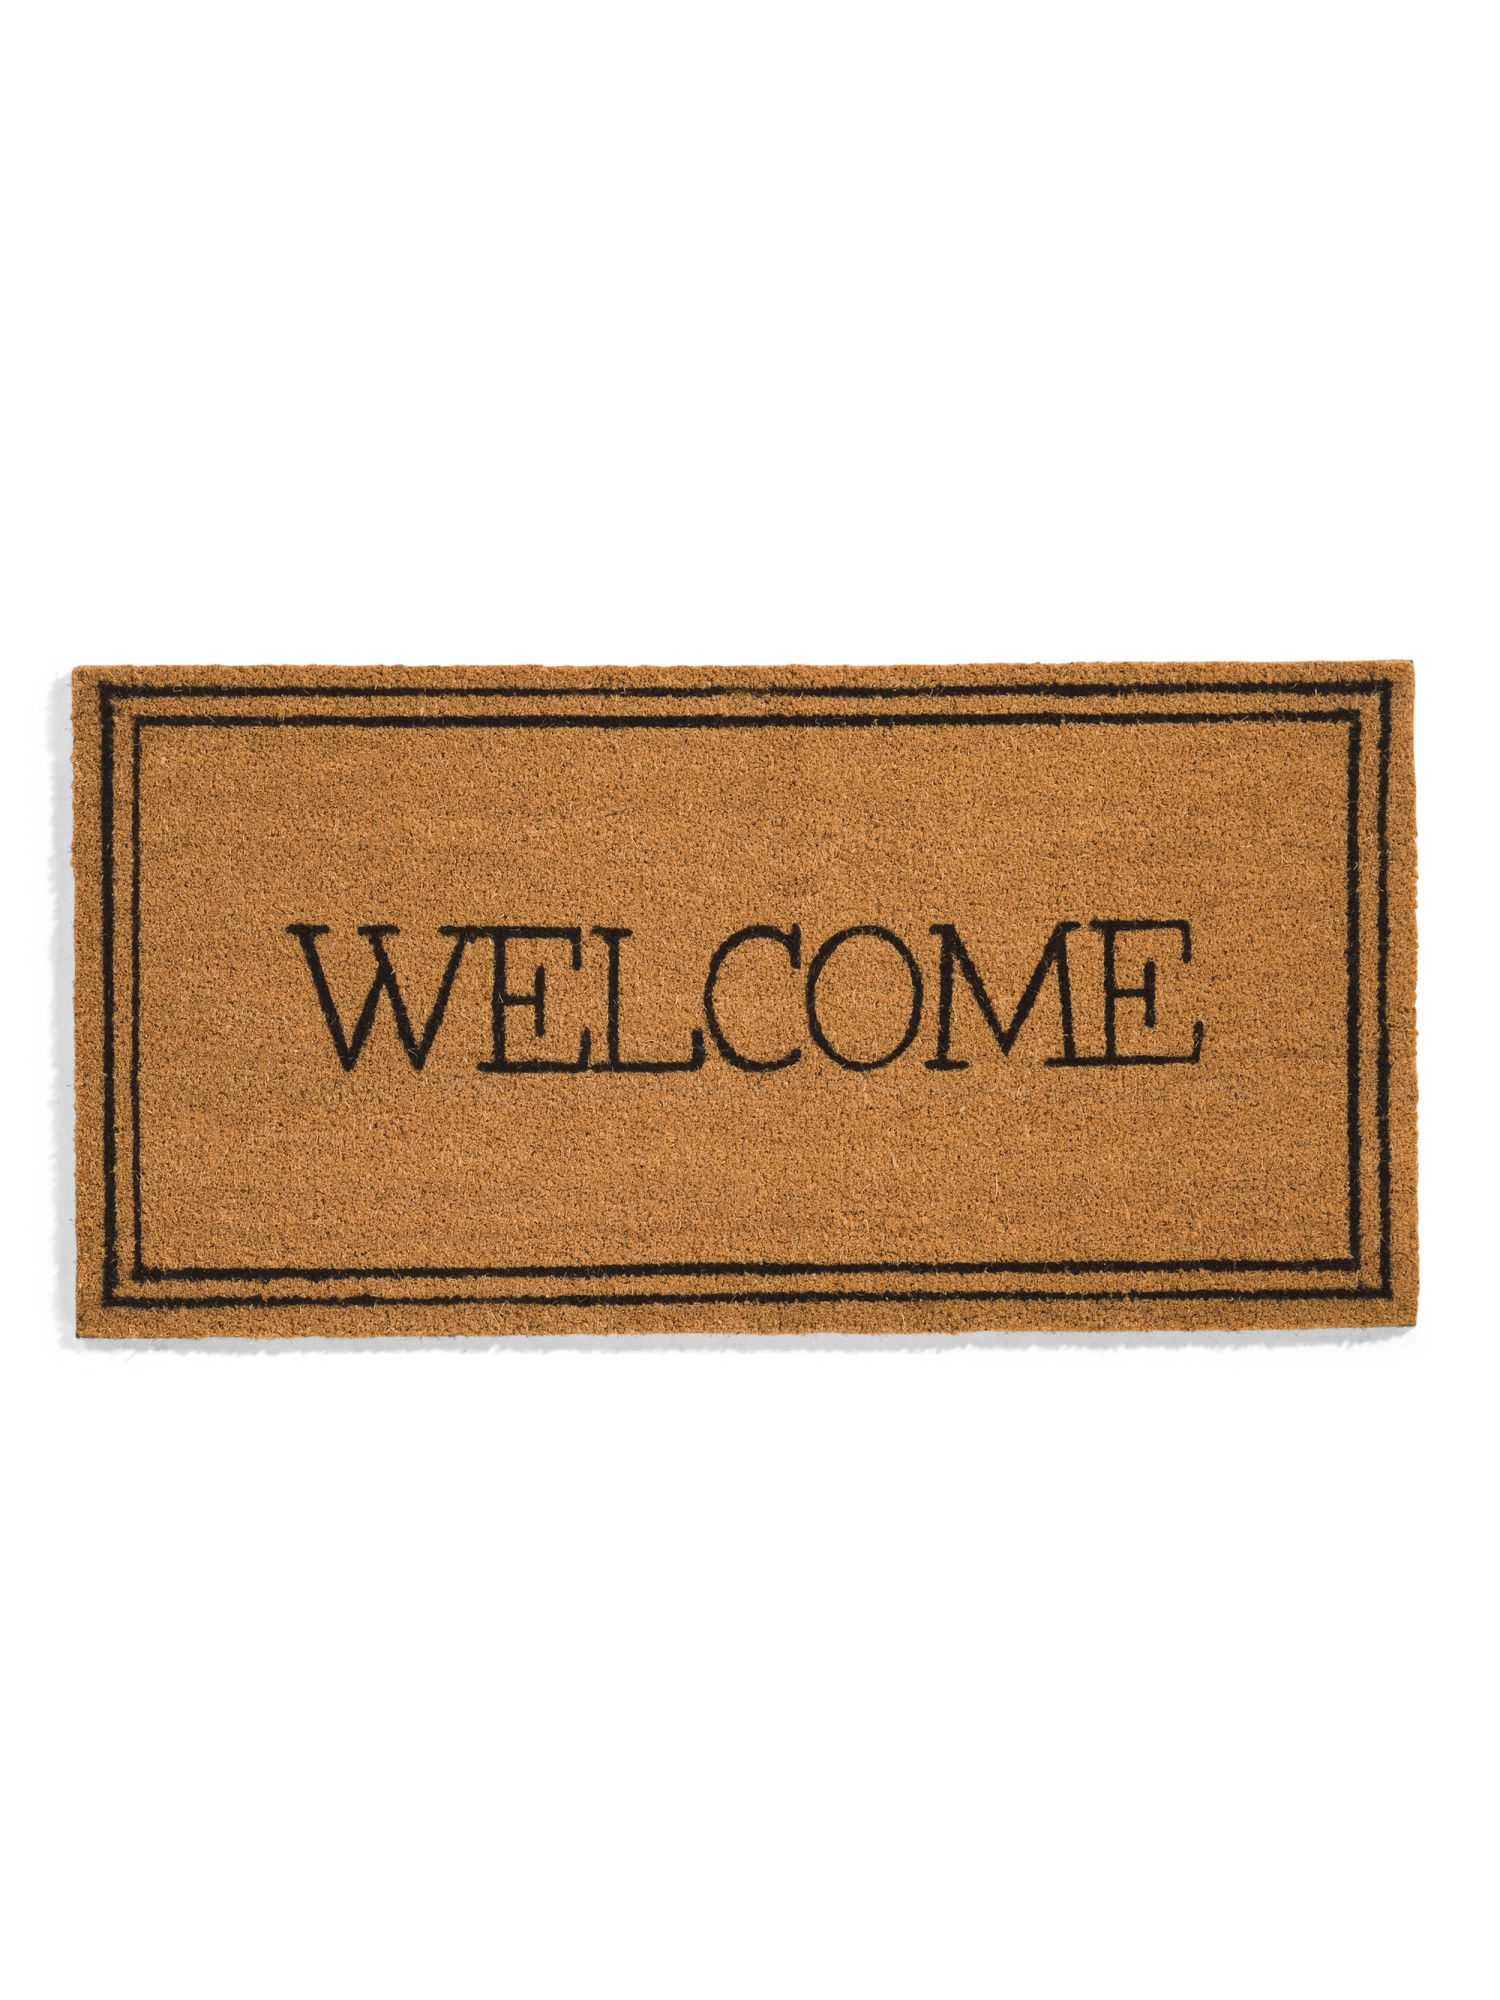 20x40 Welcome Doormat | TJ Maxx